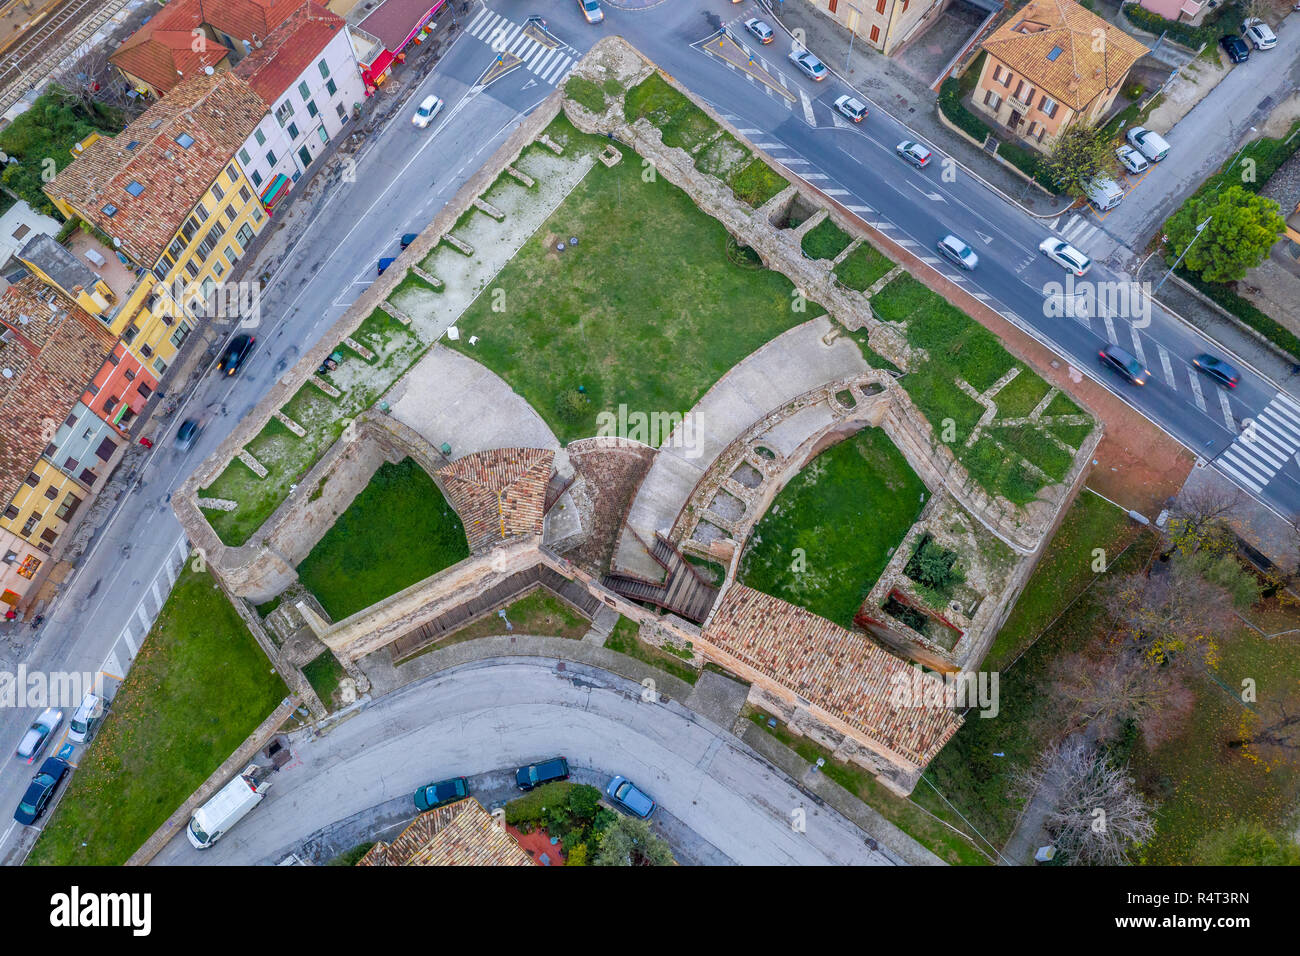 Vue aérienne de la forteresse médiévale de la ville de plage de destination de voyage populaires Fano en Italie près de Rimini dans la région des Marches. Banque D'Images